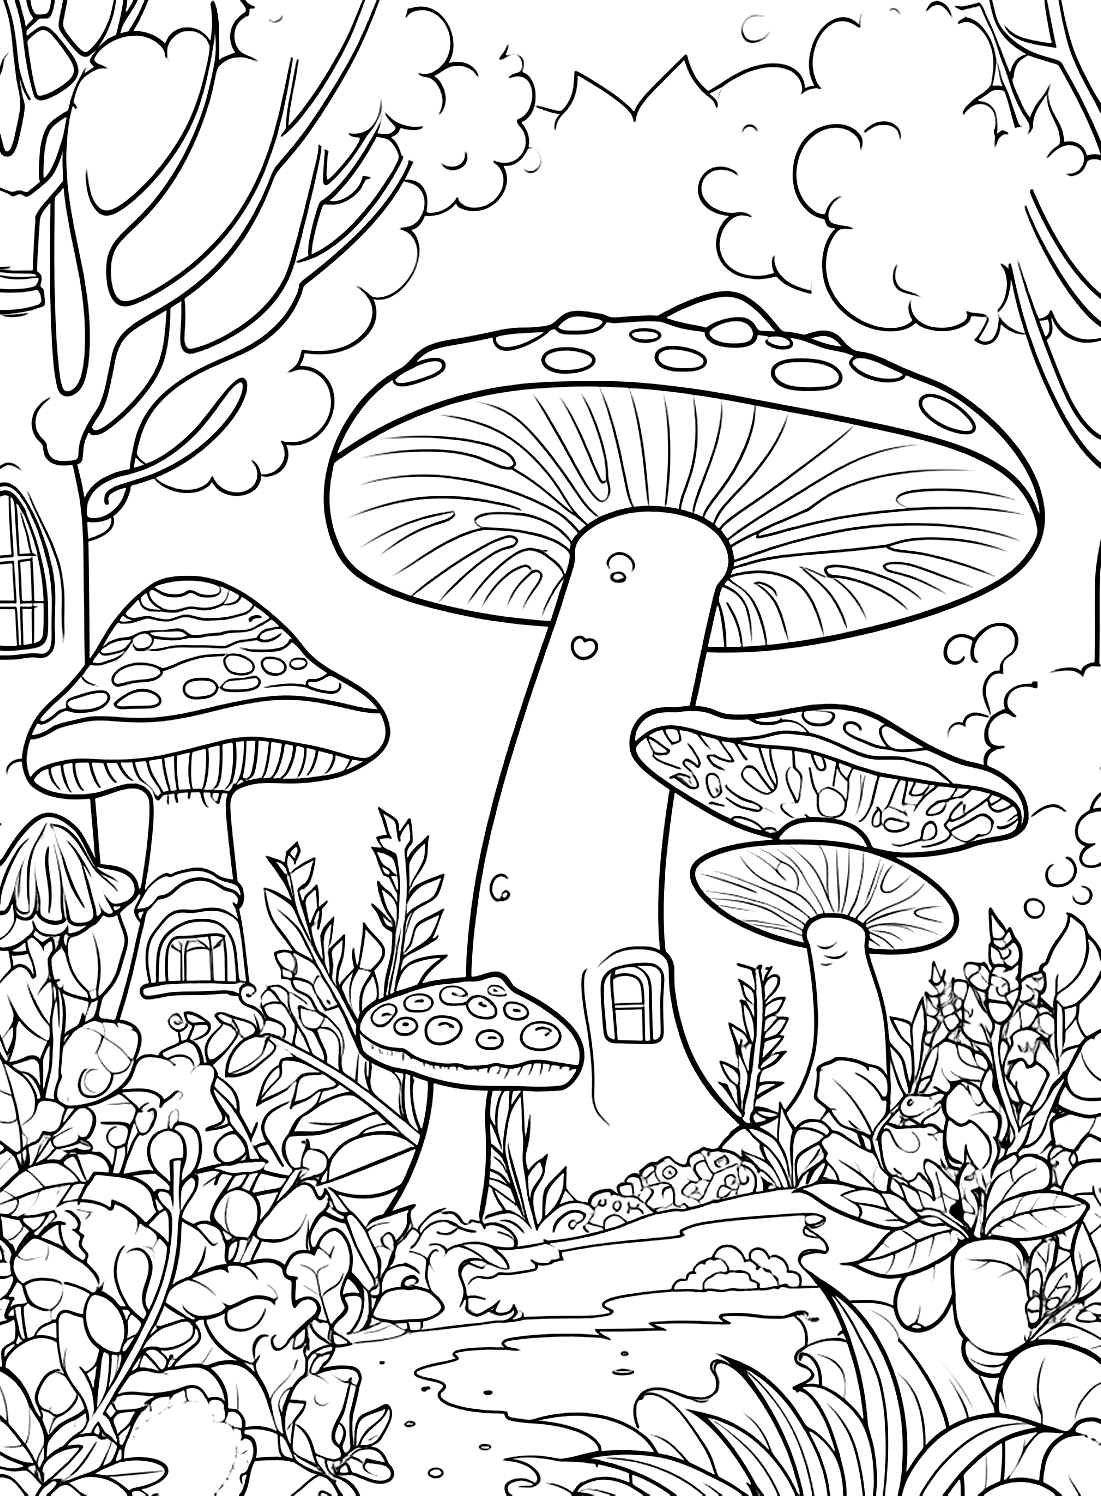 La pagina della foresta di Mushroom da Mushroom